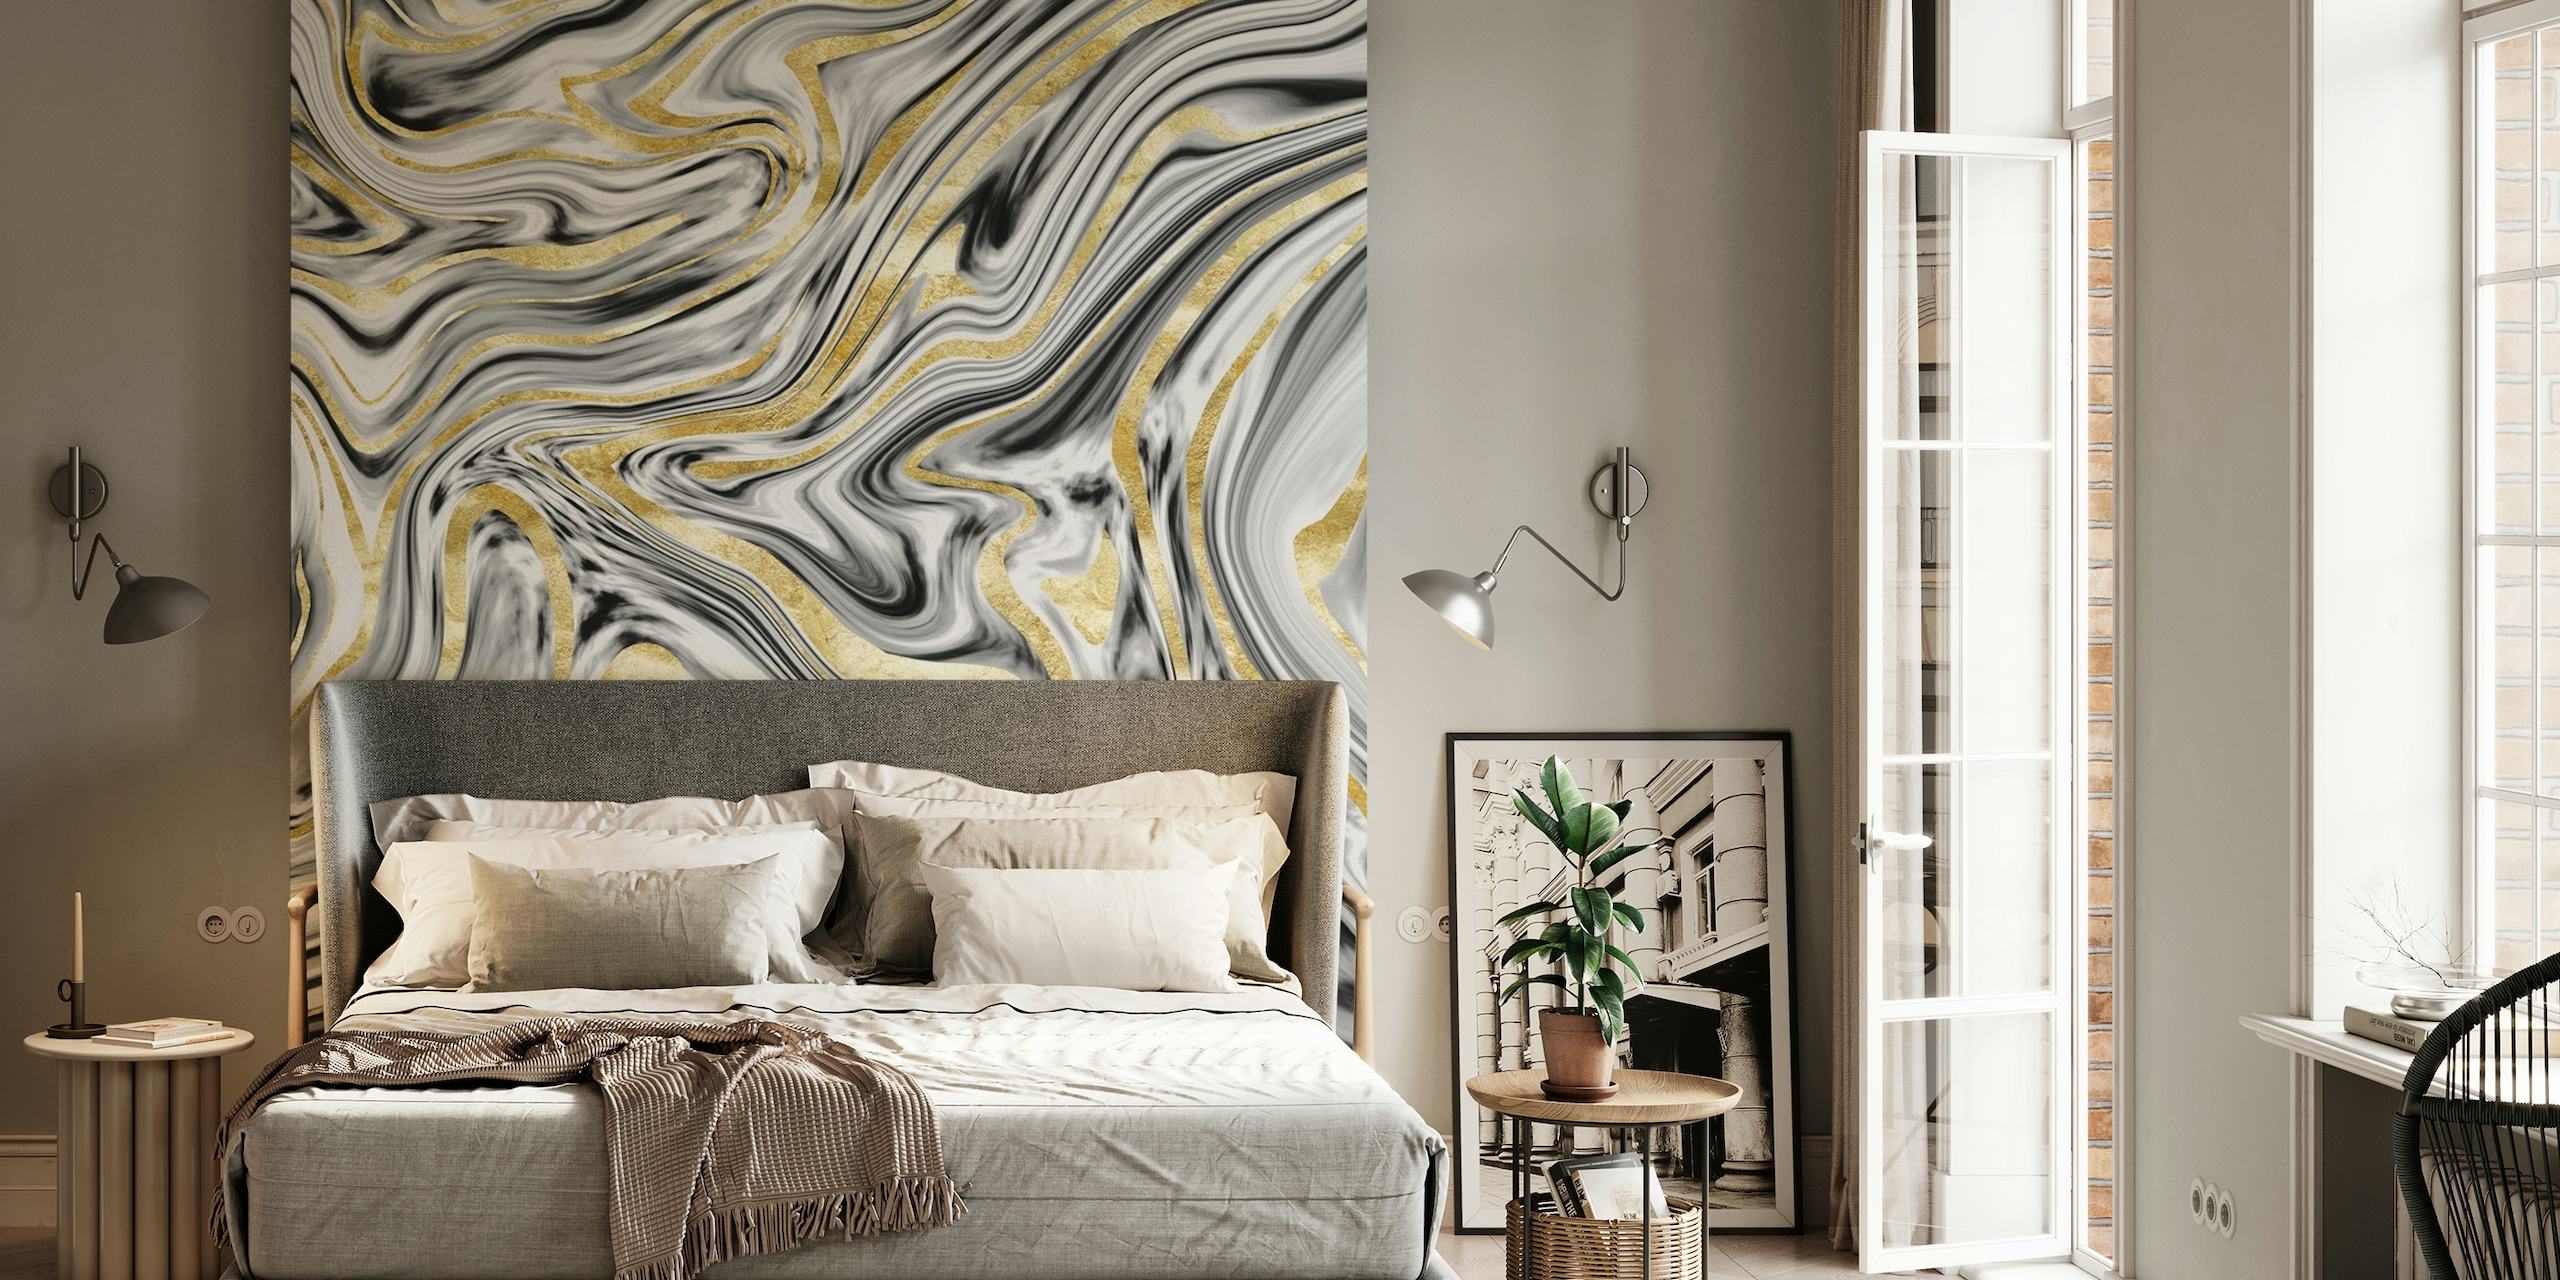 Hvirvlende grå, sort, hvid og guld marmor mønster vægmaleri